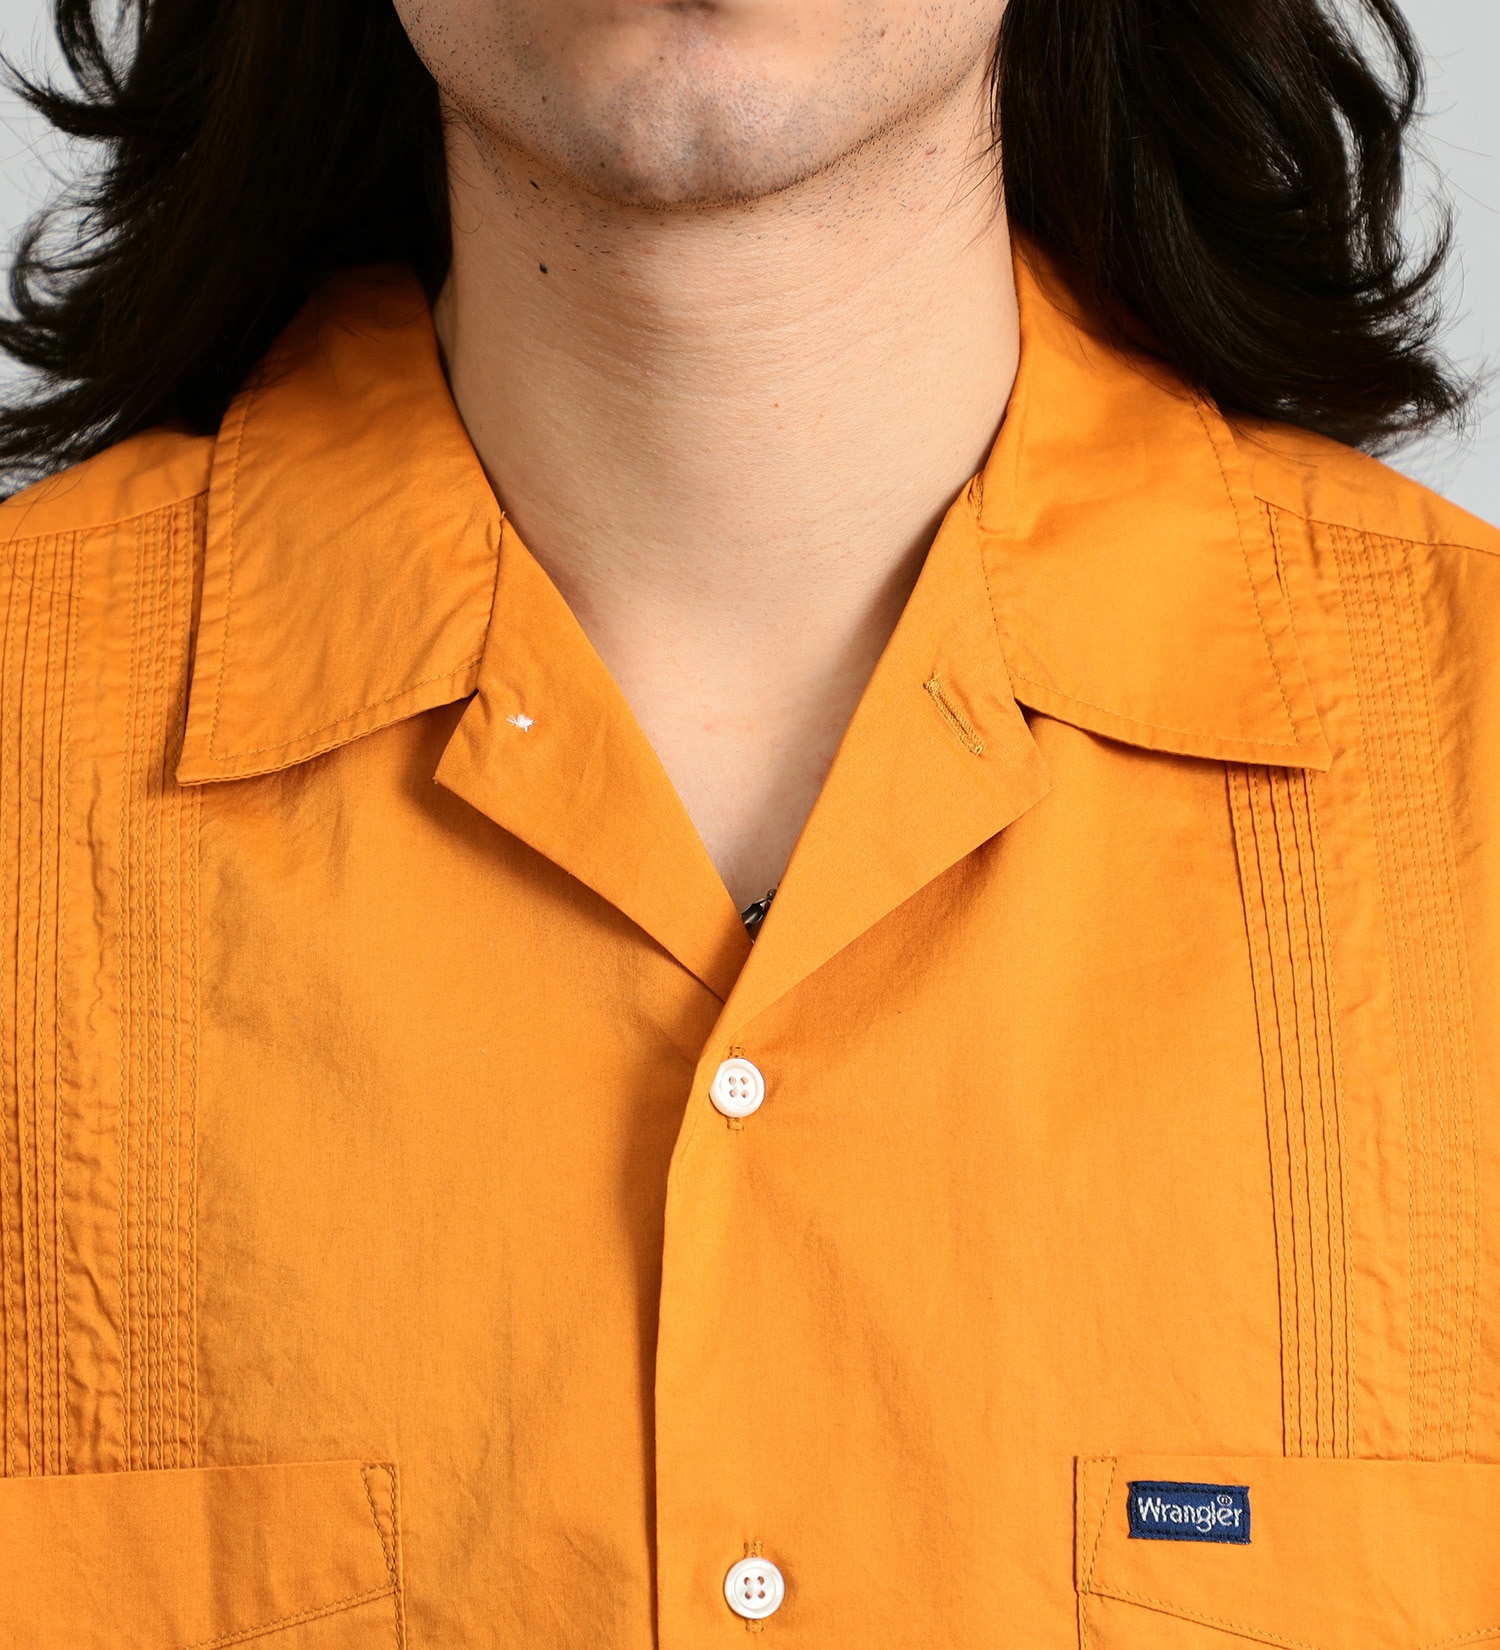 Wrangler(ラングラー)の【ブロード素材】キューバシャツ|トップス/シャツ/ブラウス/メンズ|オレンジ